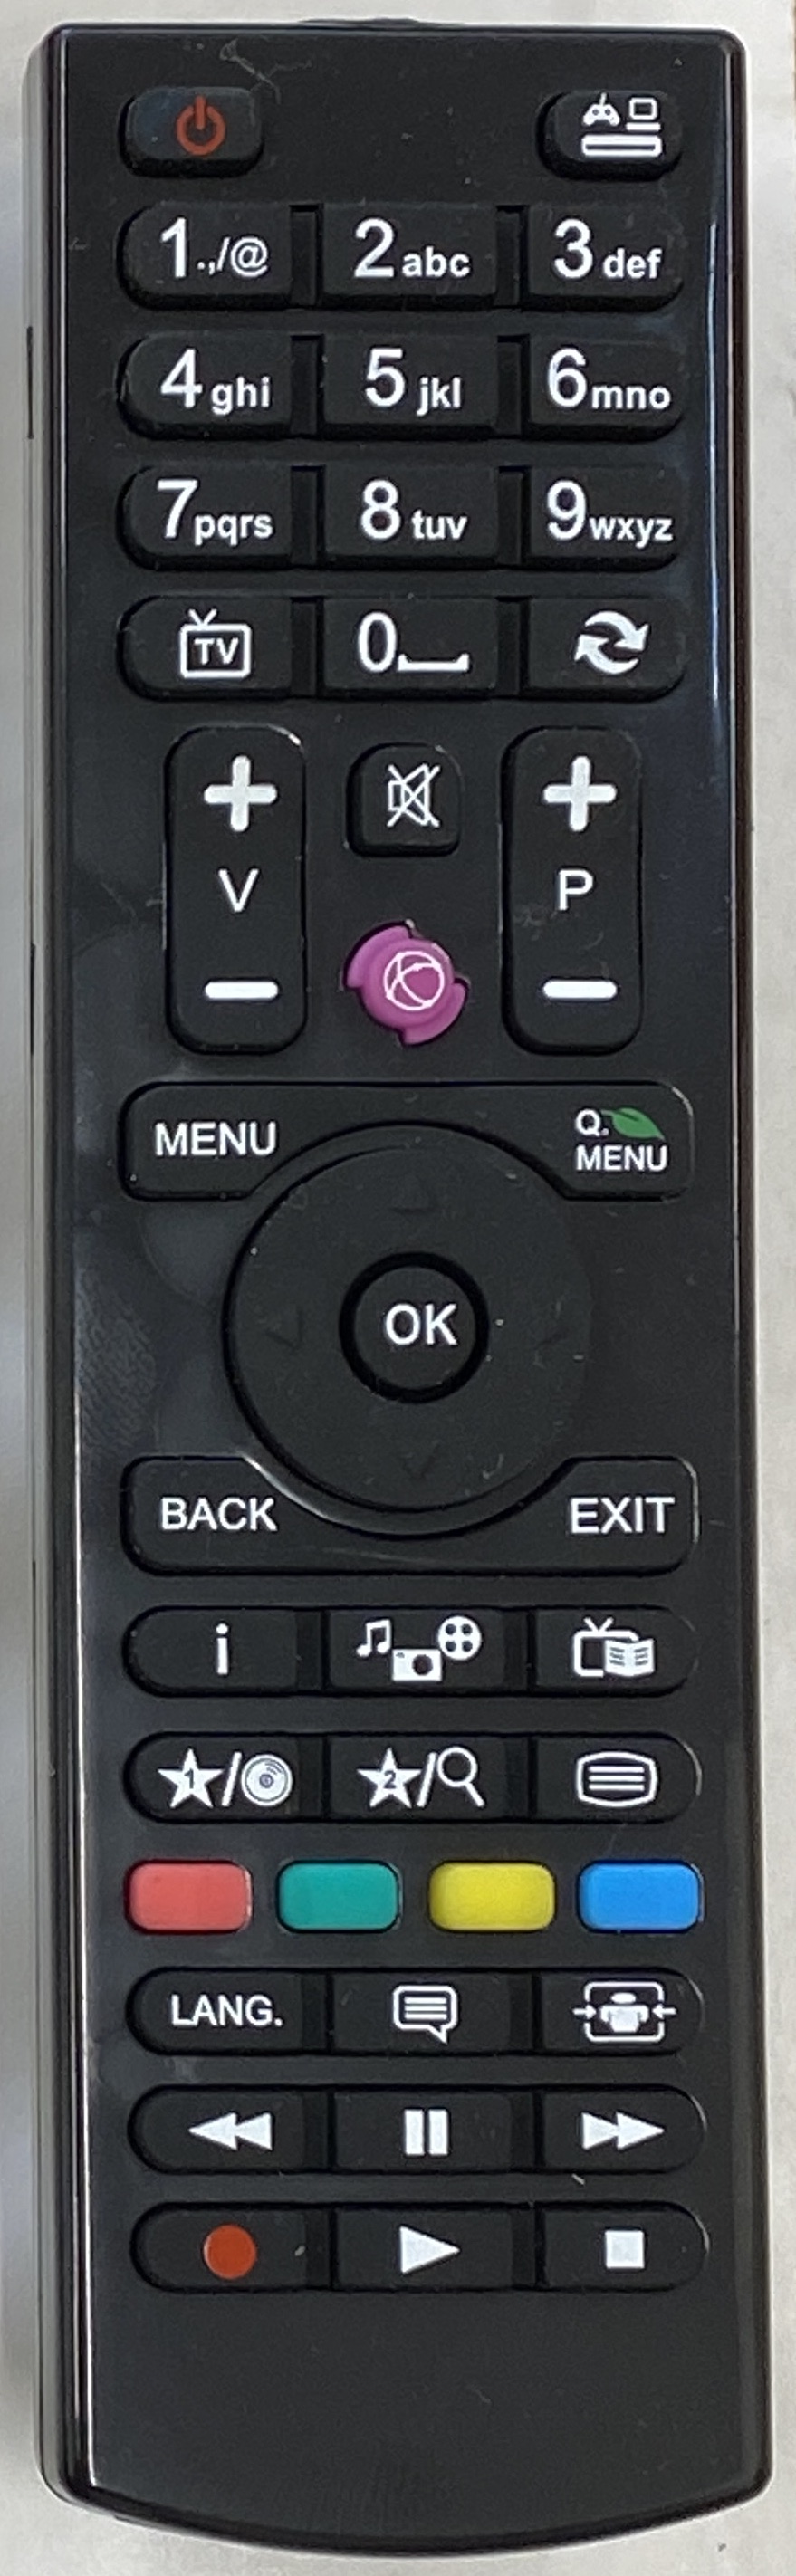 BUSH LCD22880F1080P Remote Control Original